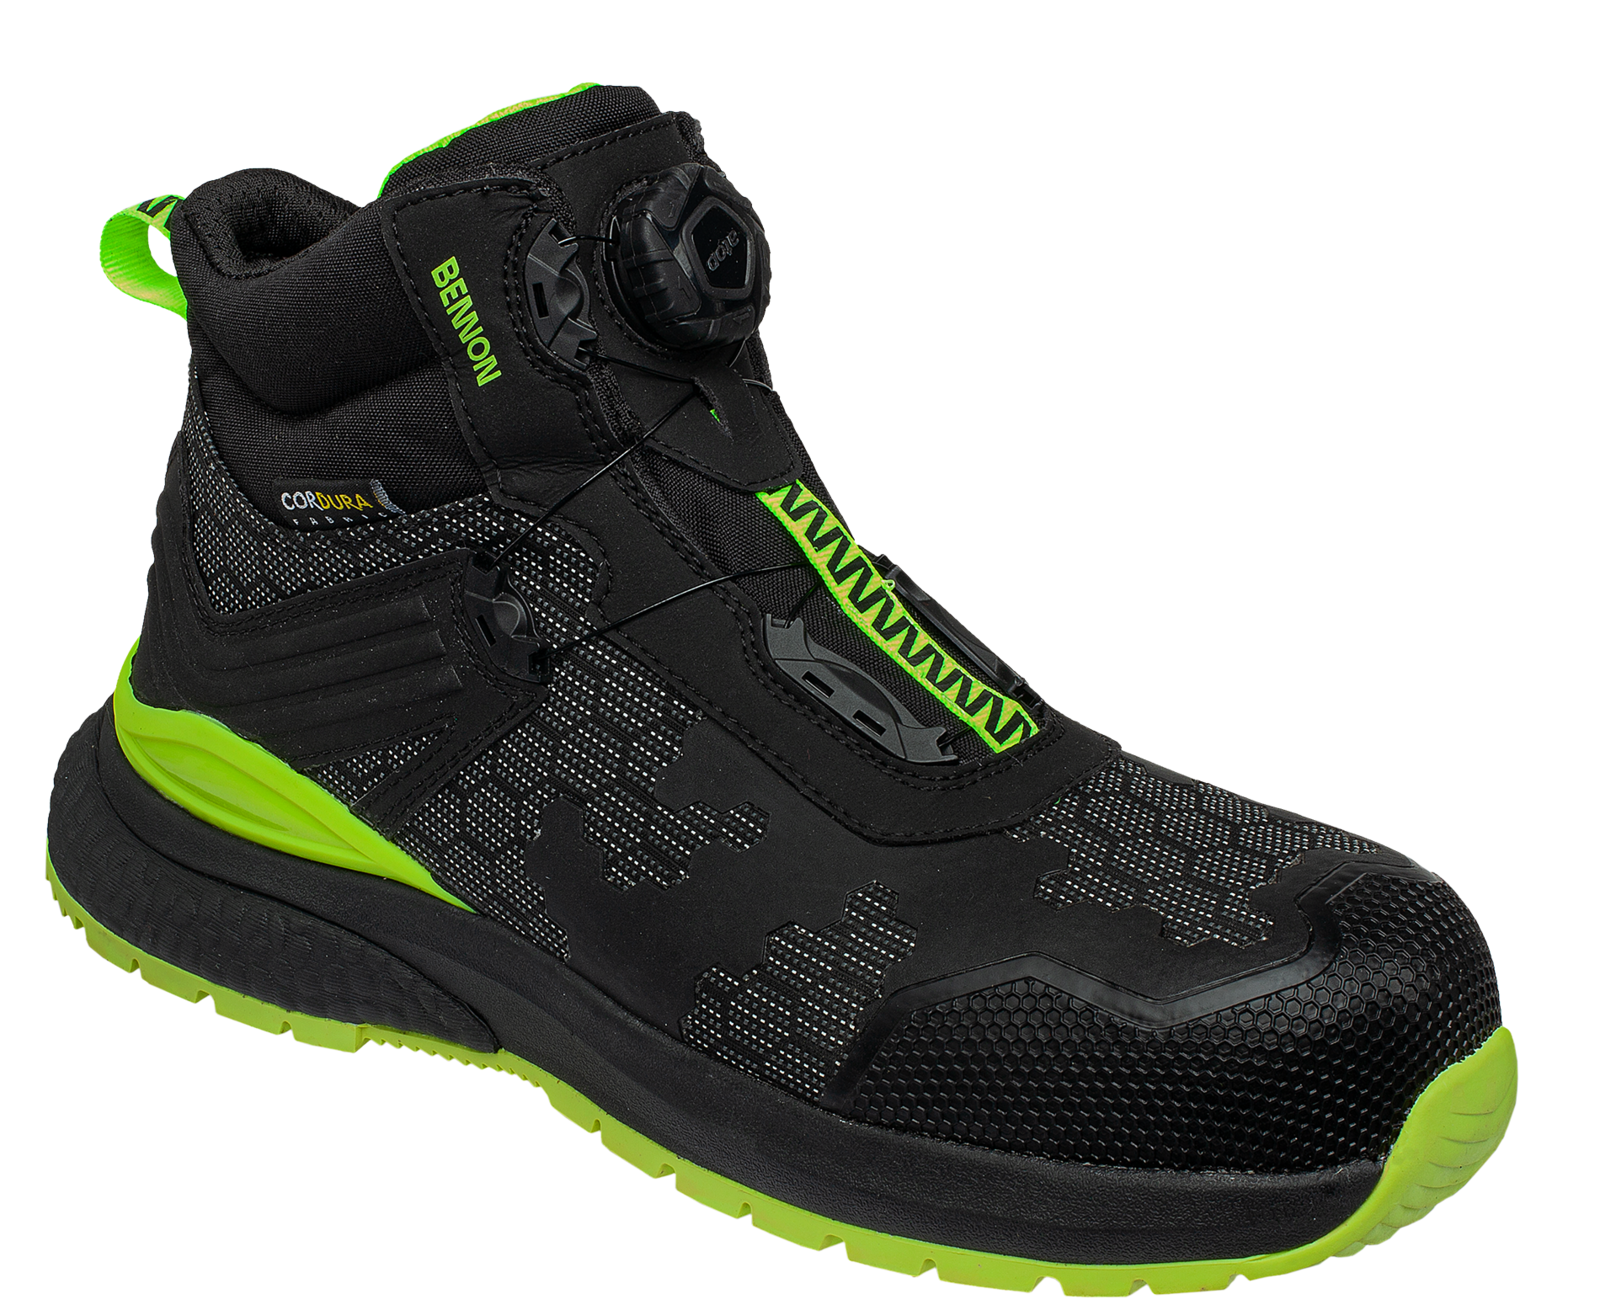 Bezpečnostná obuv Bennon Predator S3 ESD High - veľkosť: 40, farba: čierna/zelená